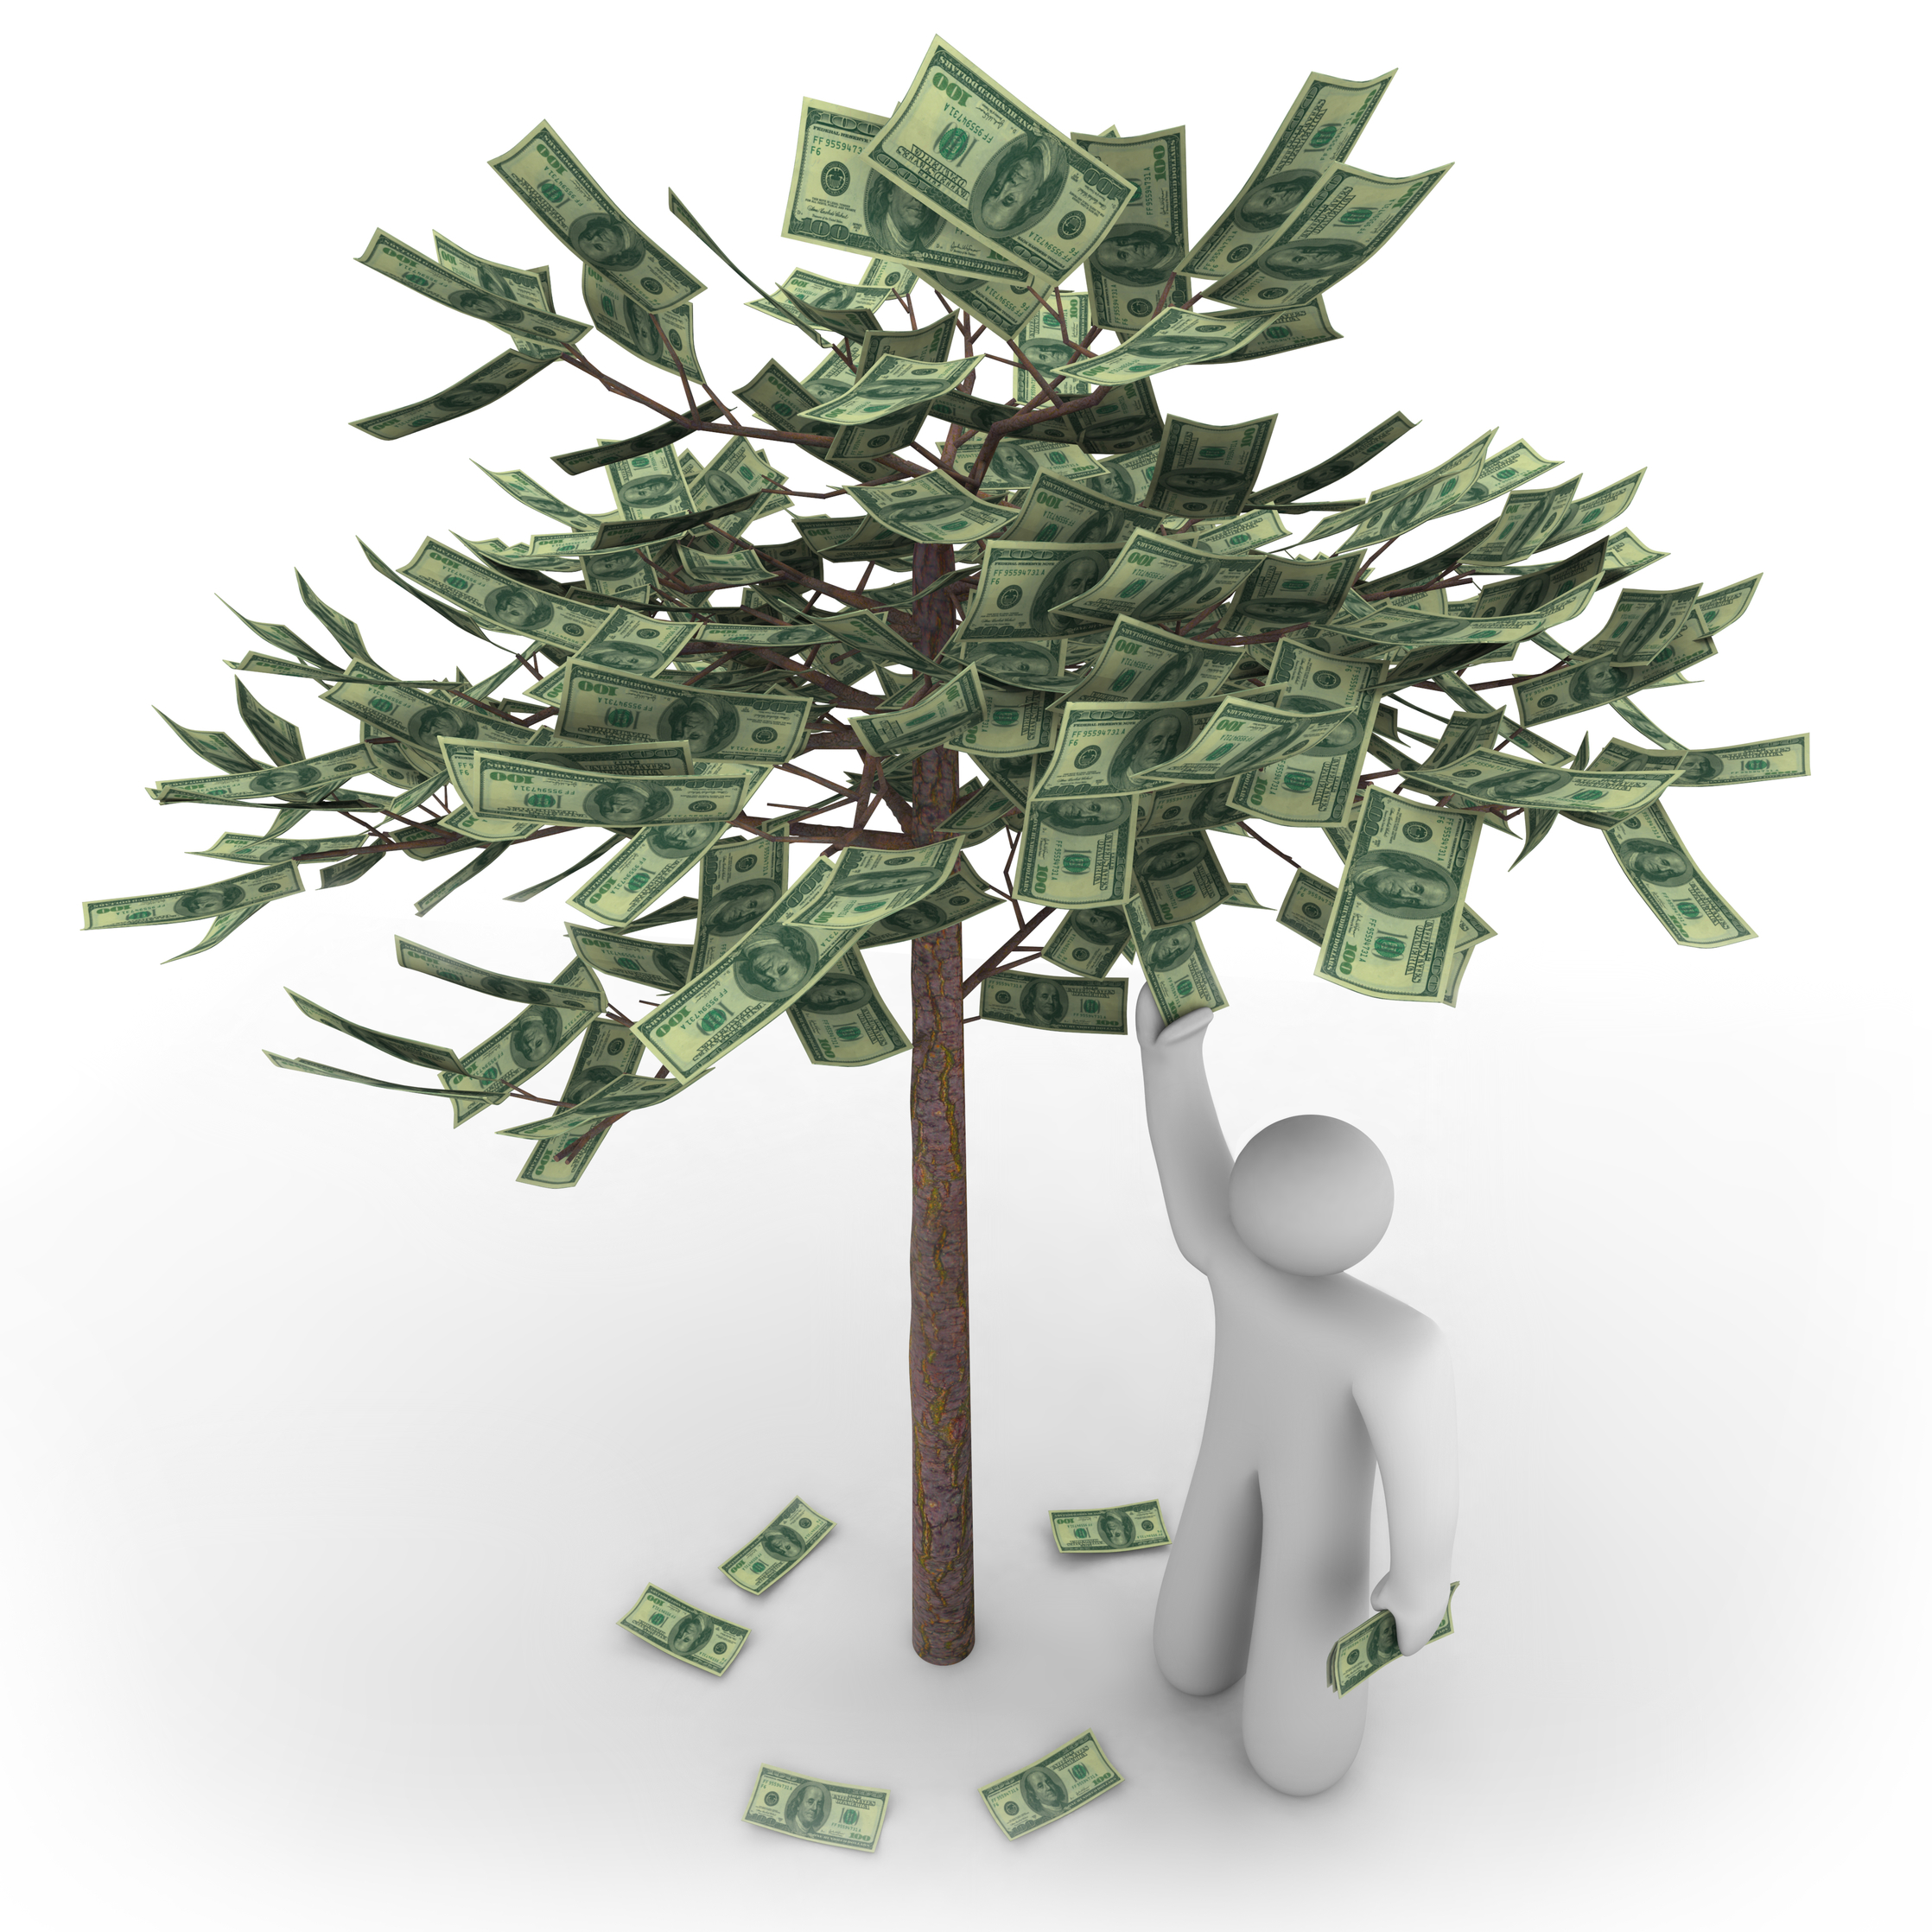 Березка деньги. Дерево с деньгами. Деньги растут на деревьях. Денежное дерево с деньгами. Дерево с денежками.